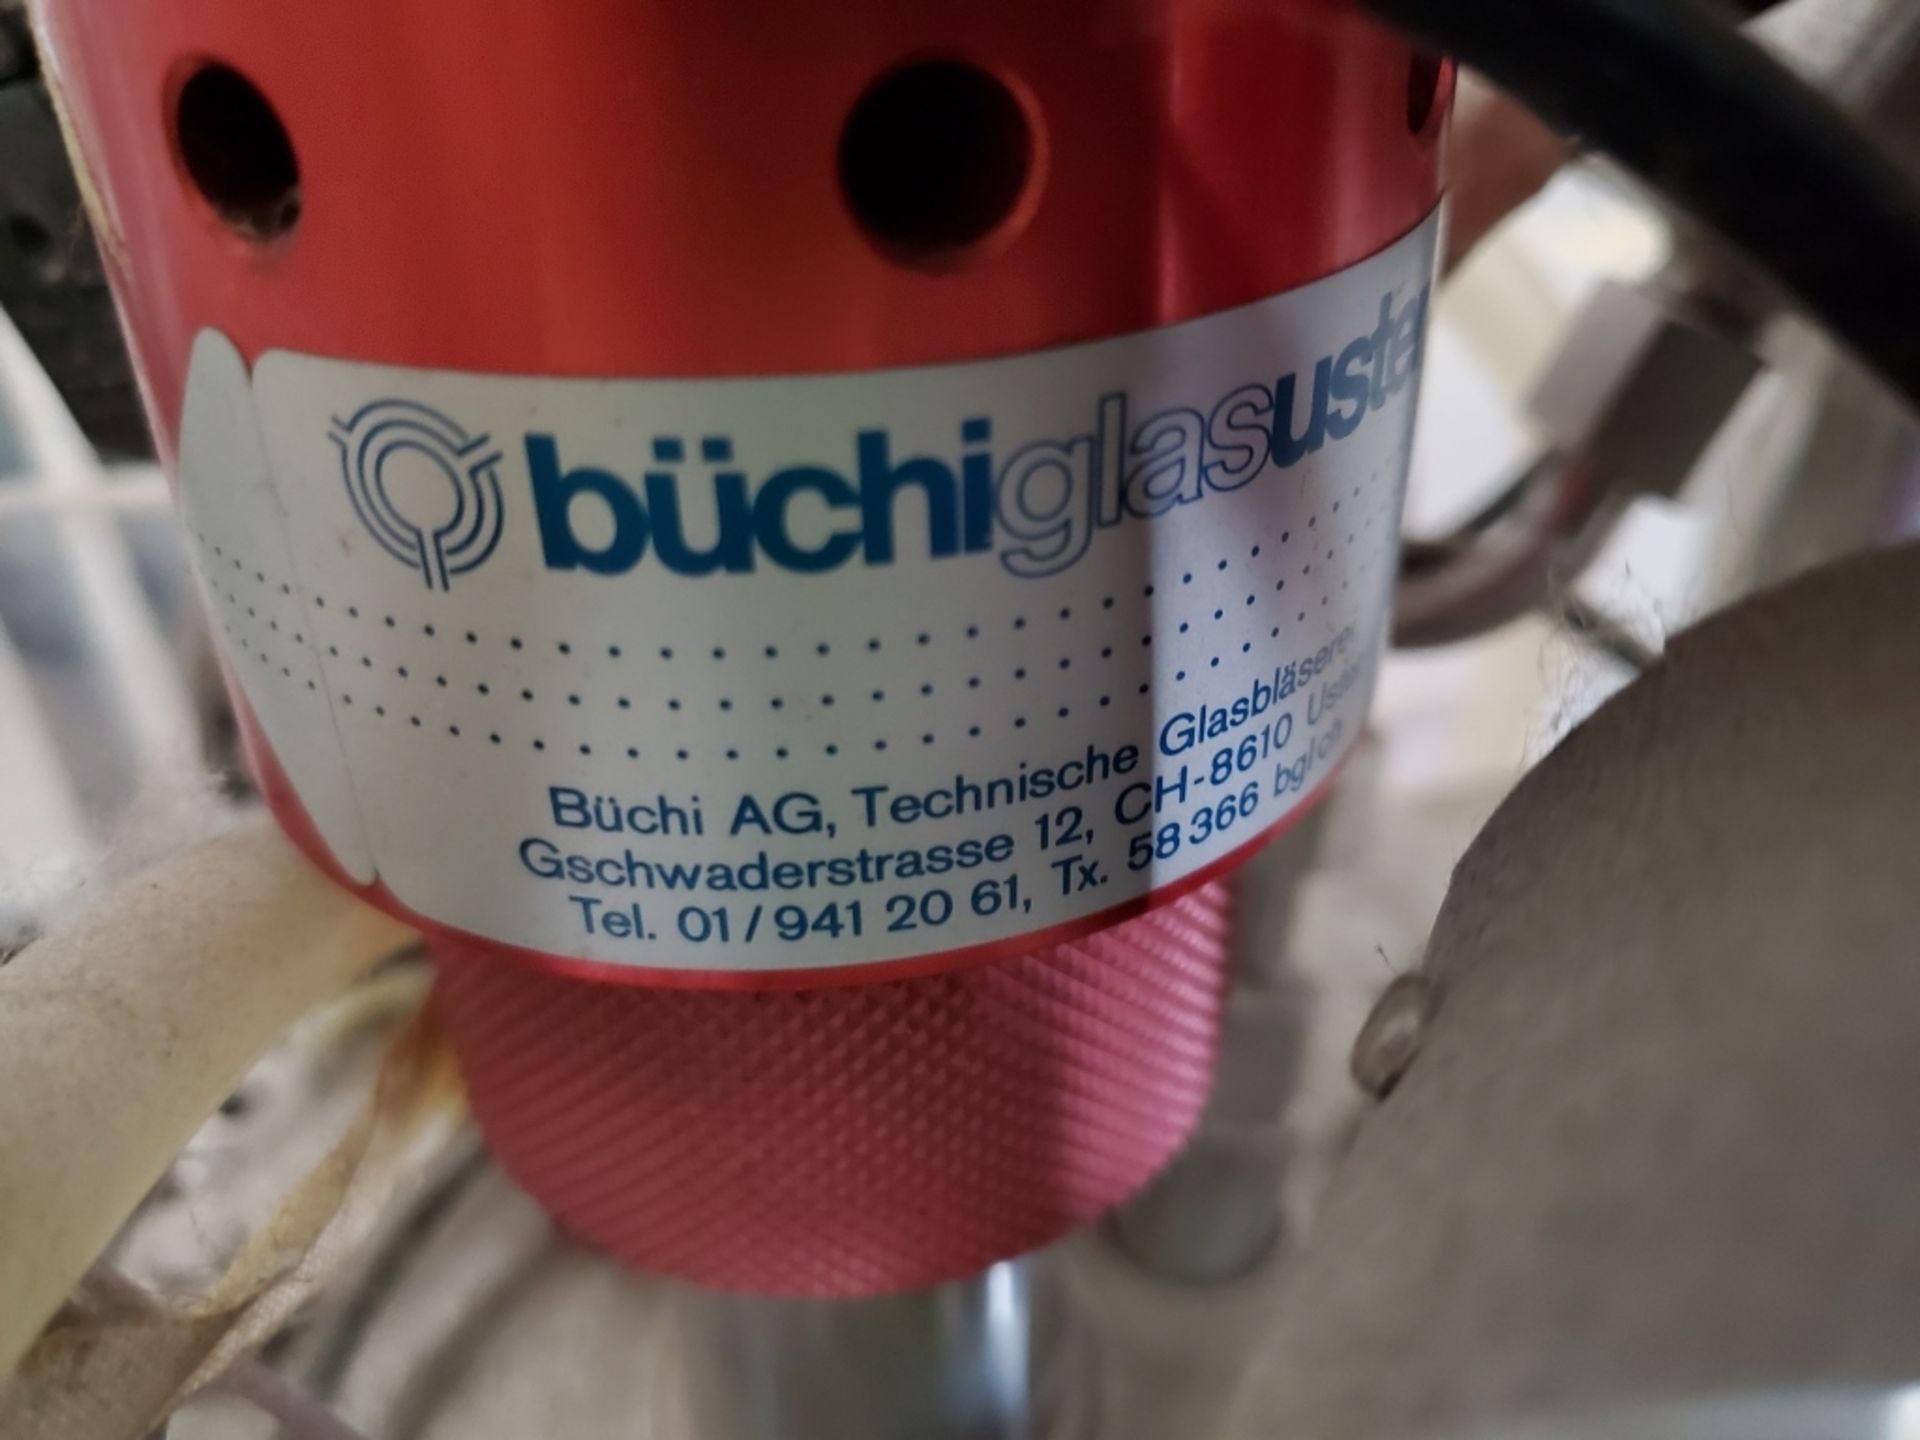 Buchi Buchiglasuster Benchtop Reactor - Image 3 of 9